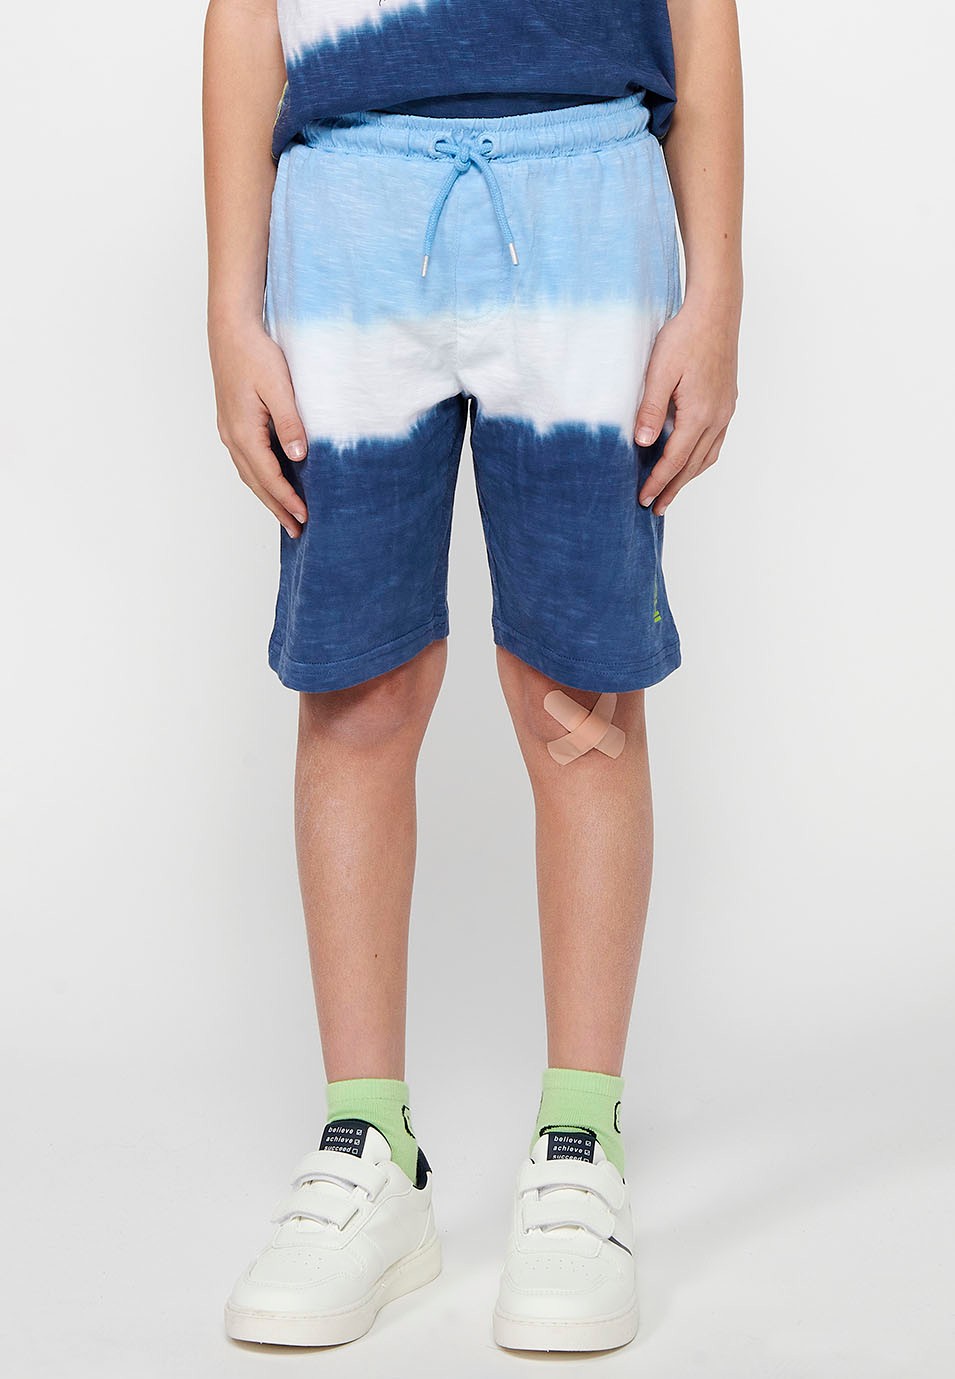 Pantalons curts amb Cintura engomada ajustable amb cordó i Estampat degradat en tres tons de Color Blau per a Nen